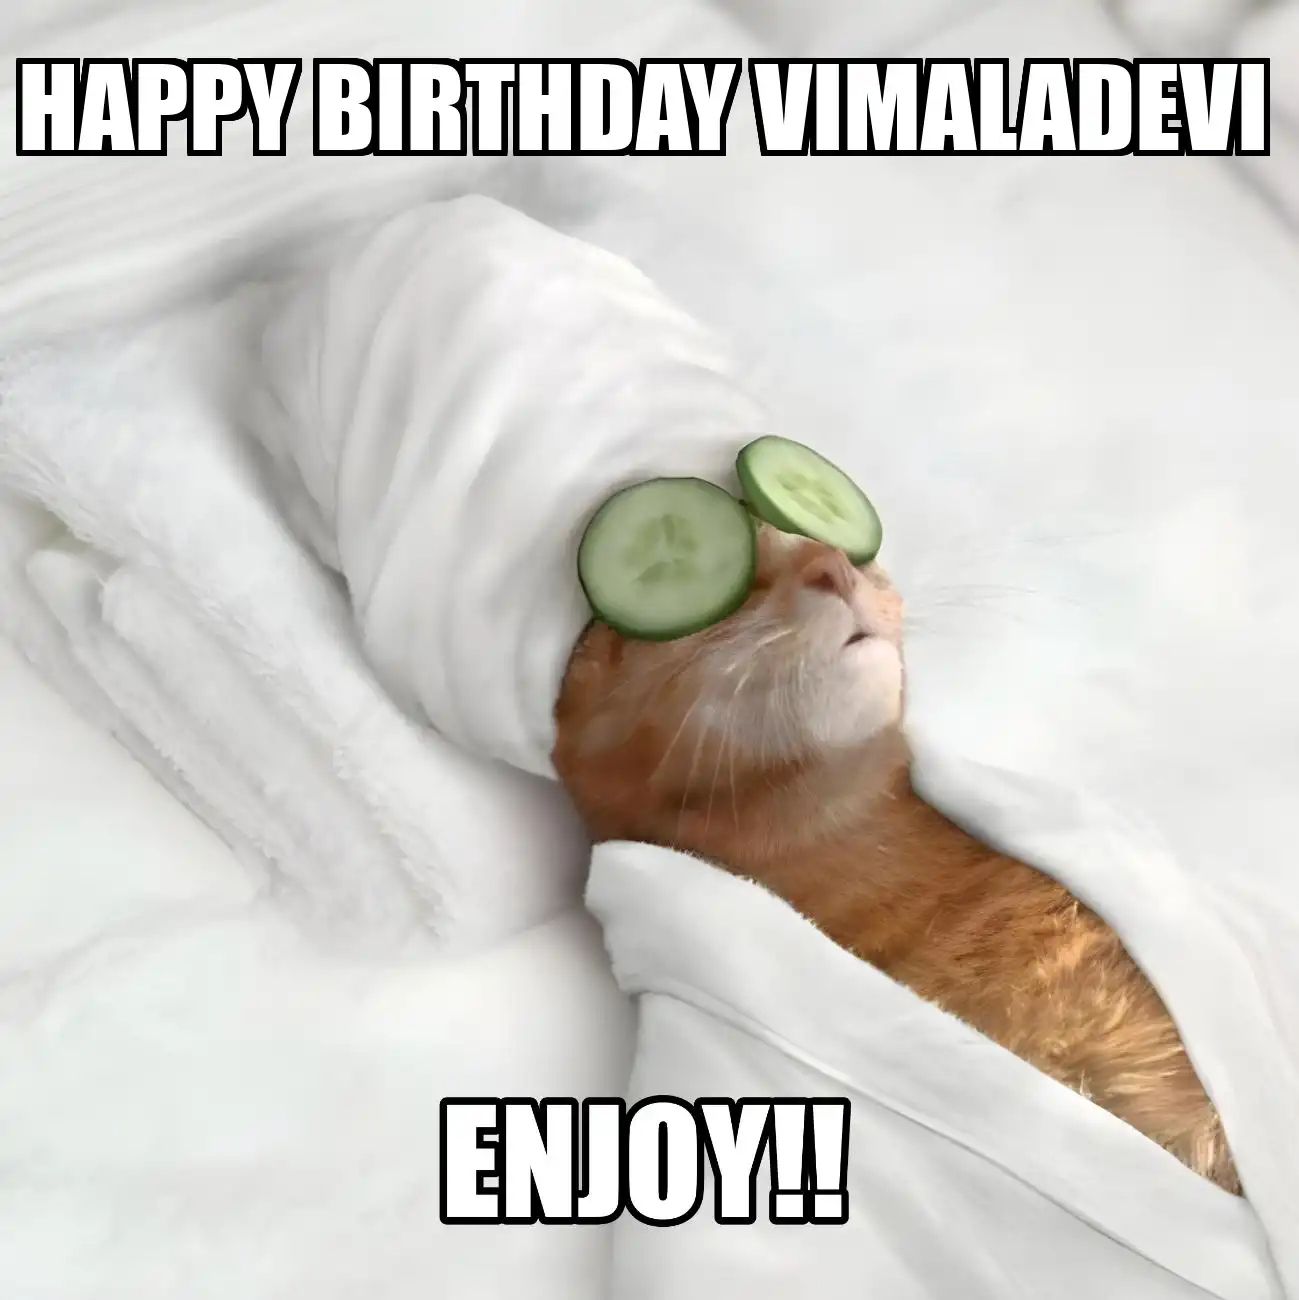 Happy Birthday Vimaladevi Enjoy Cat Meme